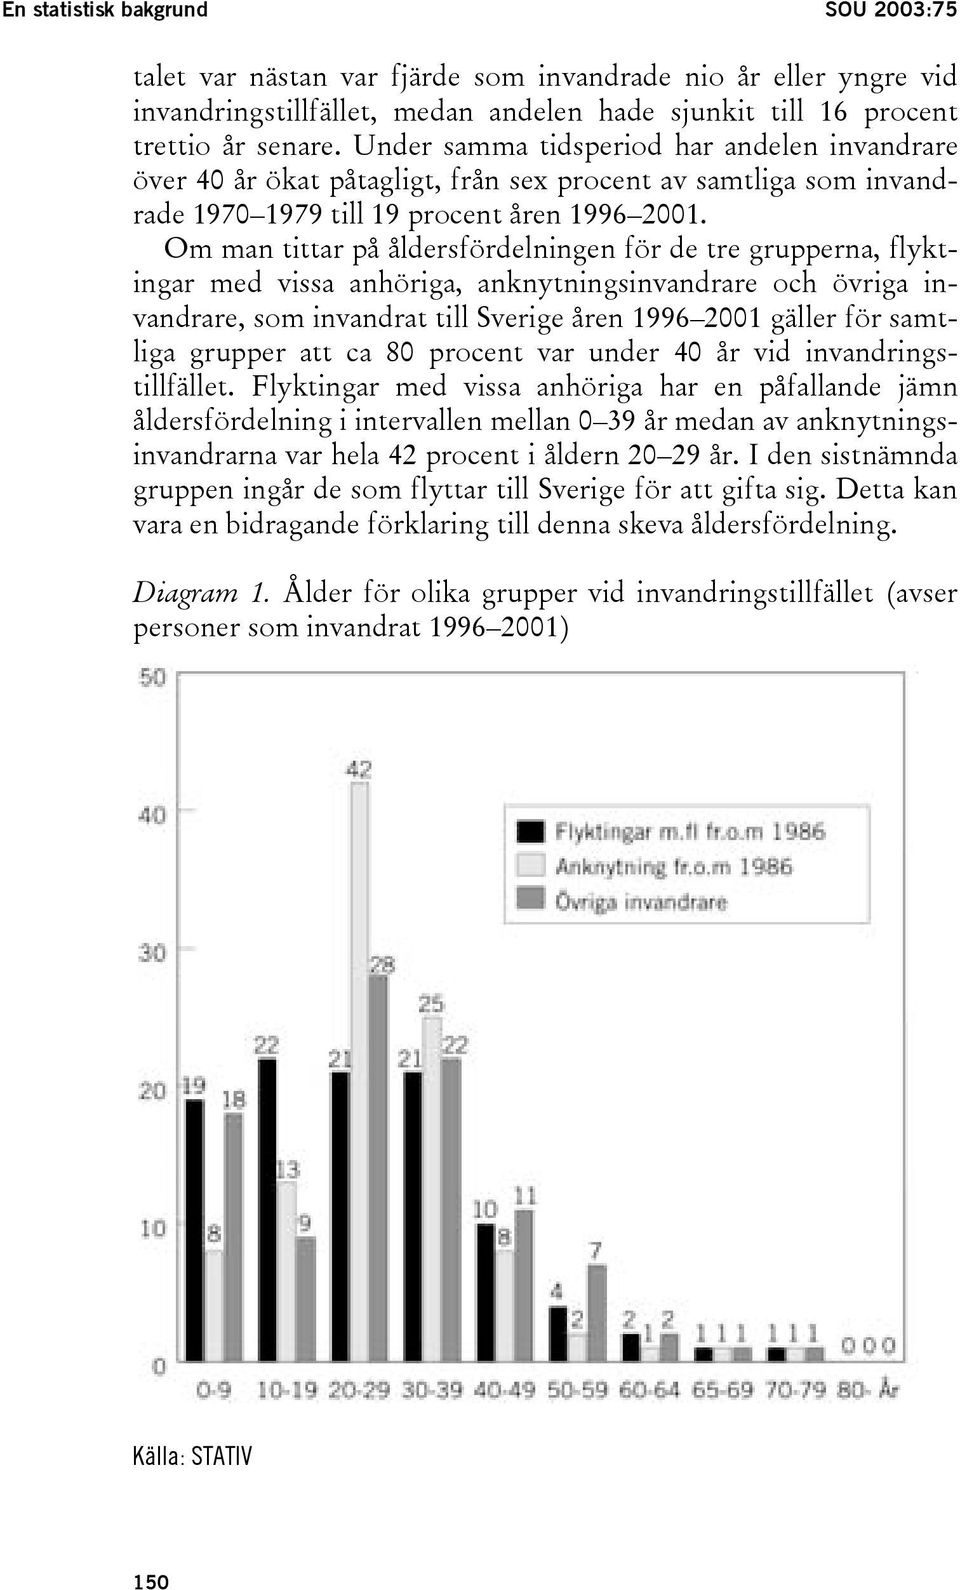 Om man tittar på åldersfördelningen för de tre grupperna, flyktingar med vissa anhöriga, anknytningsinvandrare och övriga invandrare, som invandrat till Sverige åren 1996 2001 gäller för samtliga